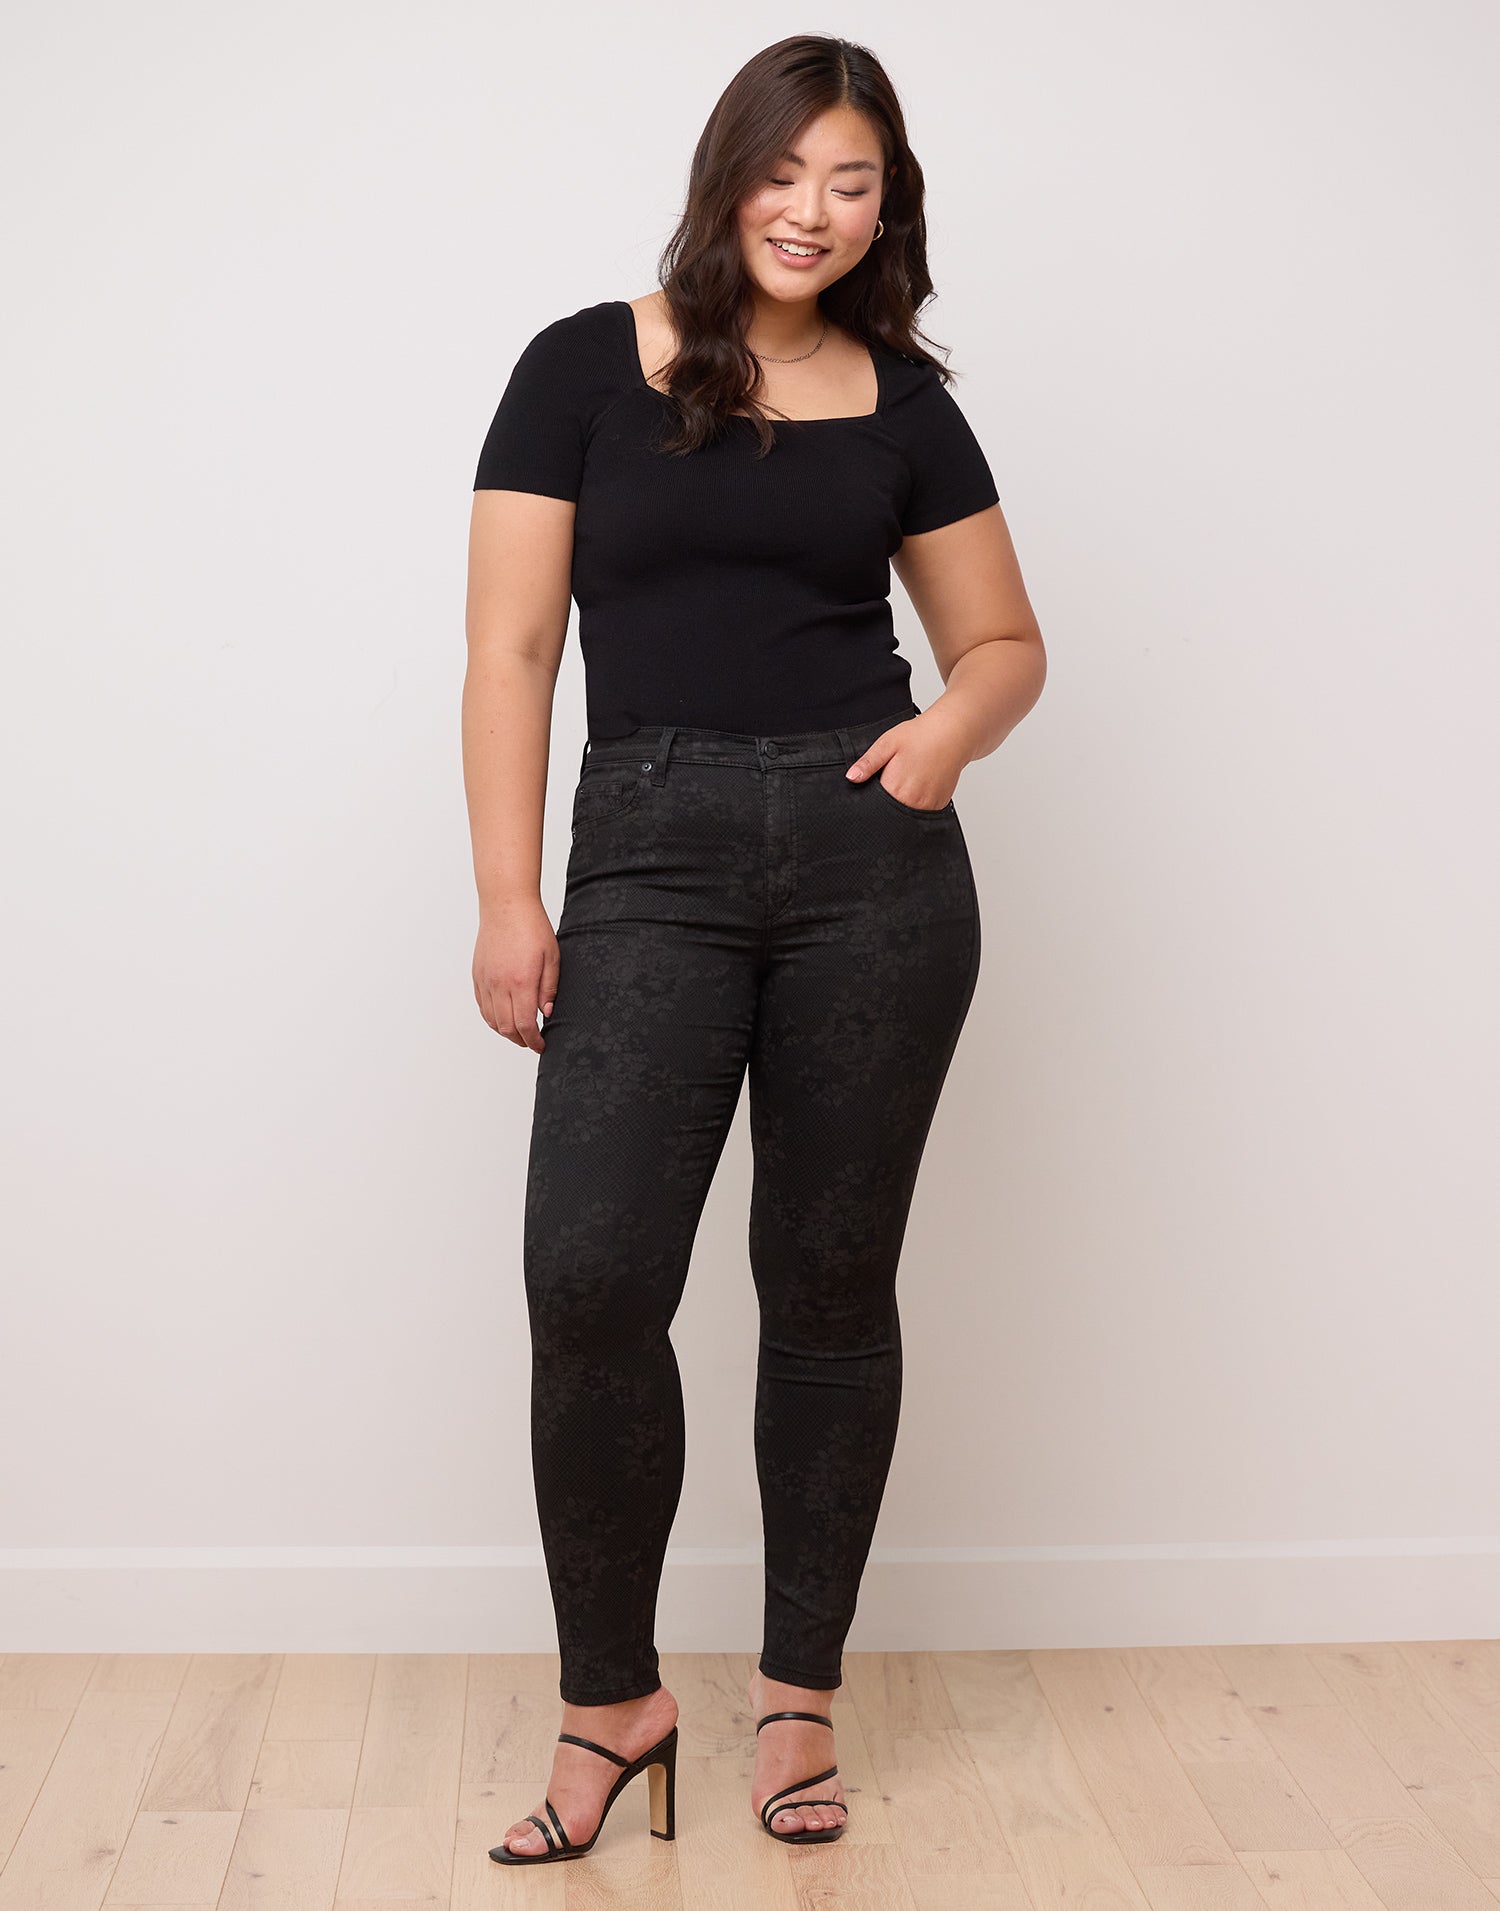 Jeans coupe skinny Rachel floral noir par Yoga Jeans Designé au Québec 3 de 3